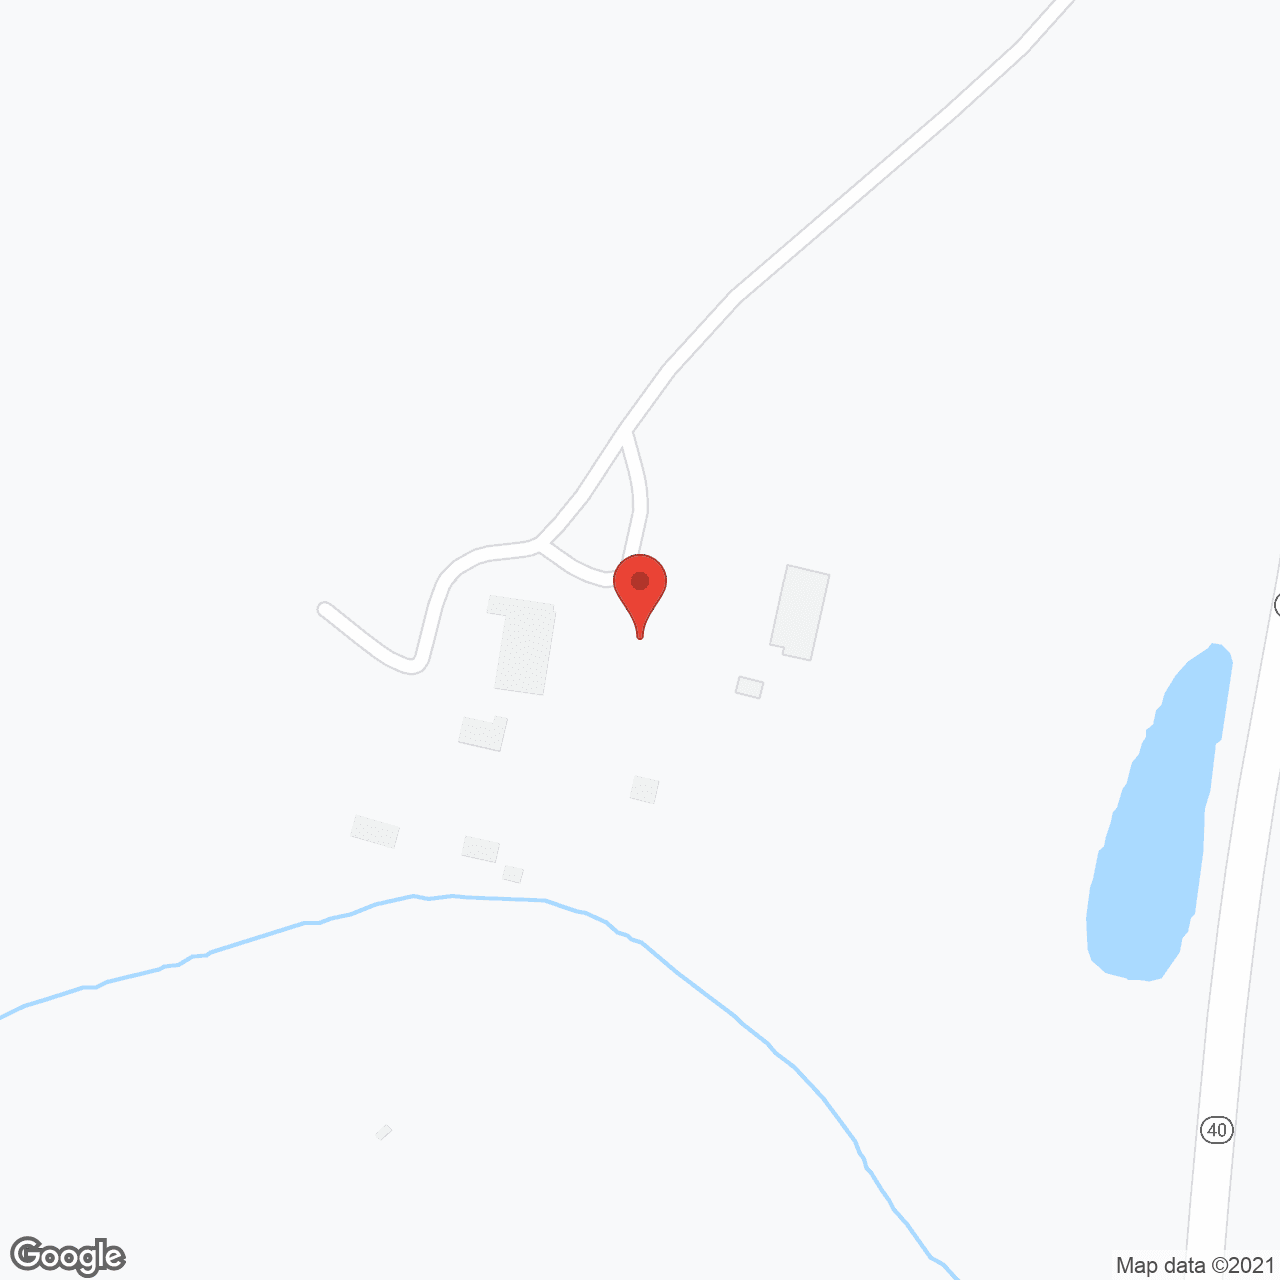 Washington Center in google map